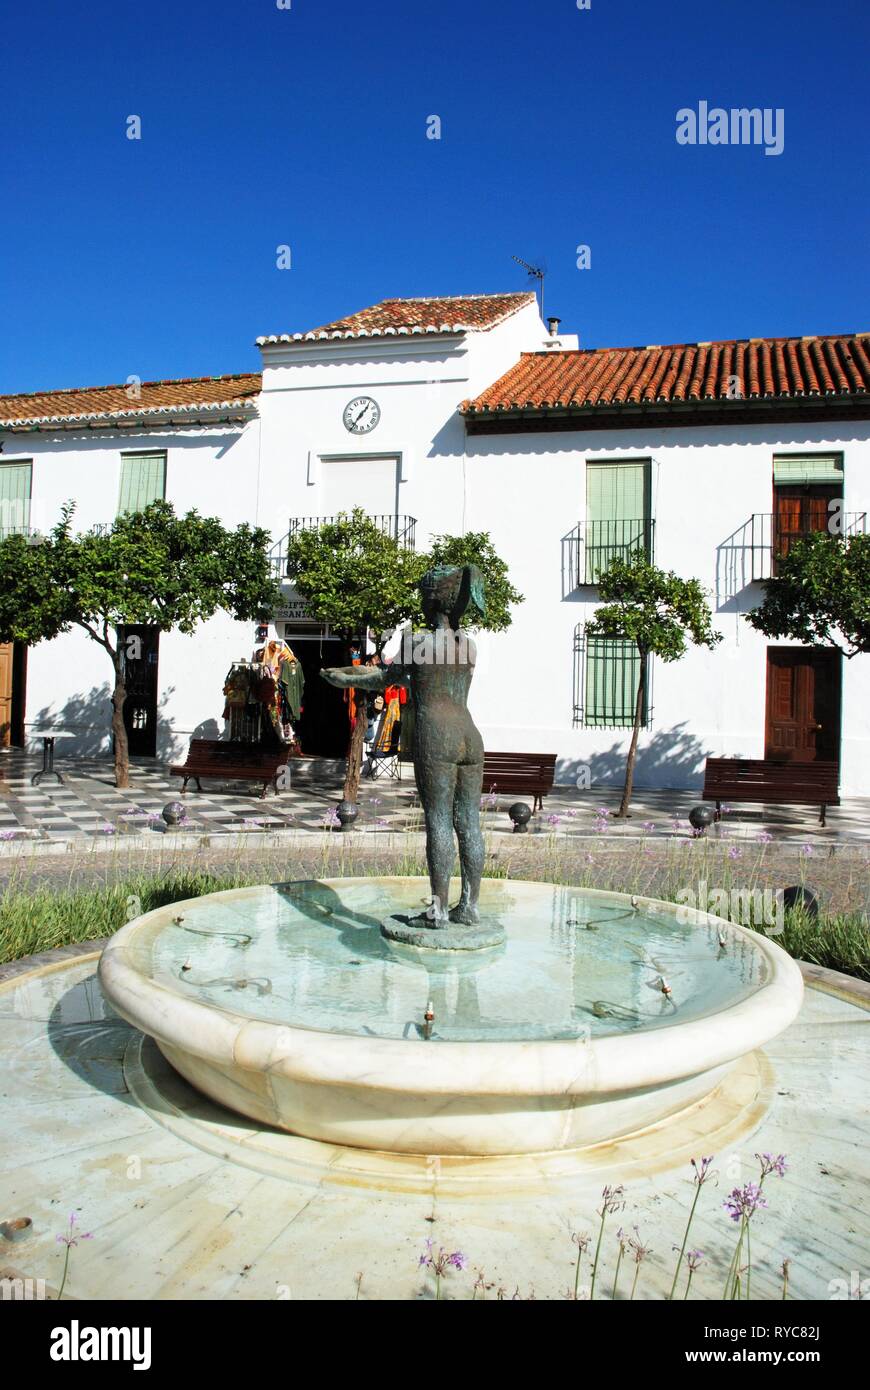 Brunnen in der Plaza de Espana, Benalmadena Pueblo, Costa del Sol, Provinz Malaga, Andalusien, Spanien. Stockfoto